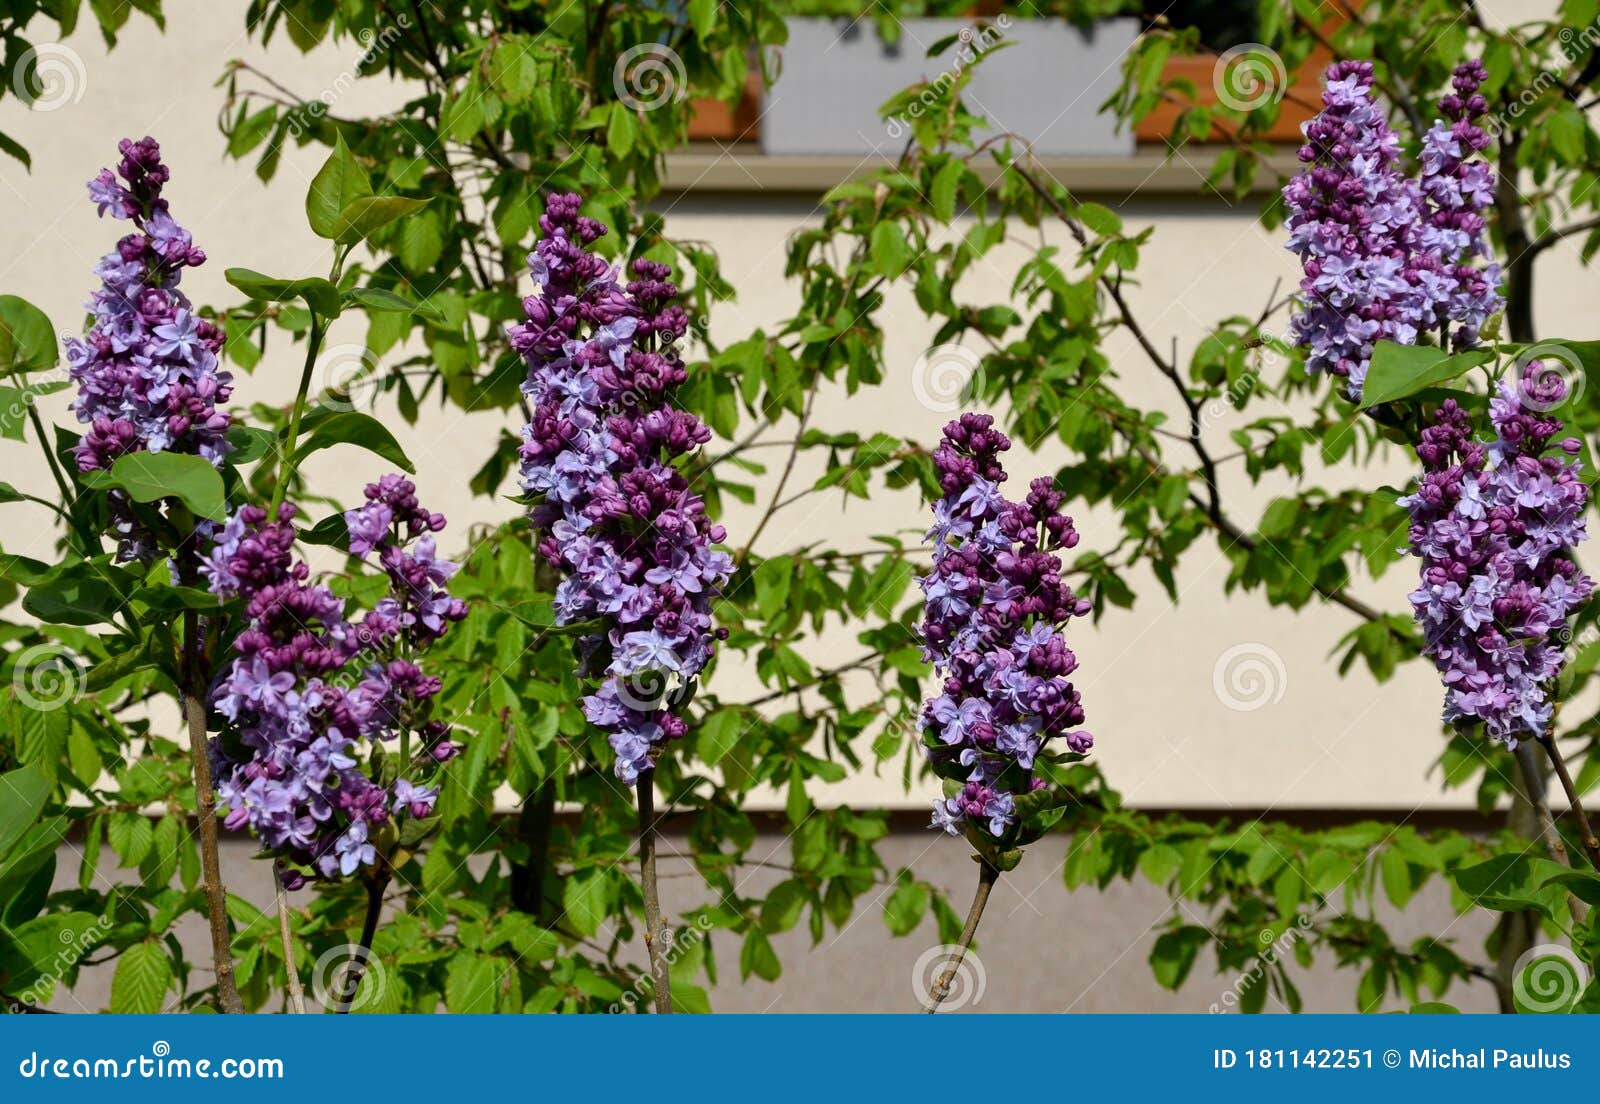 丁香花灌木紫紫色春针细细库存图片 图片包括有花瓣 新鲜 紫罗兰色 庭院 夏天 开花 公园